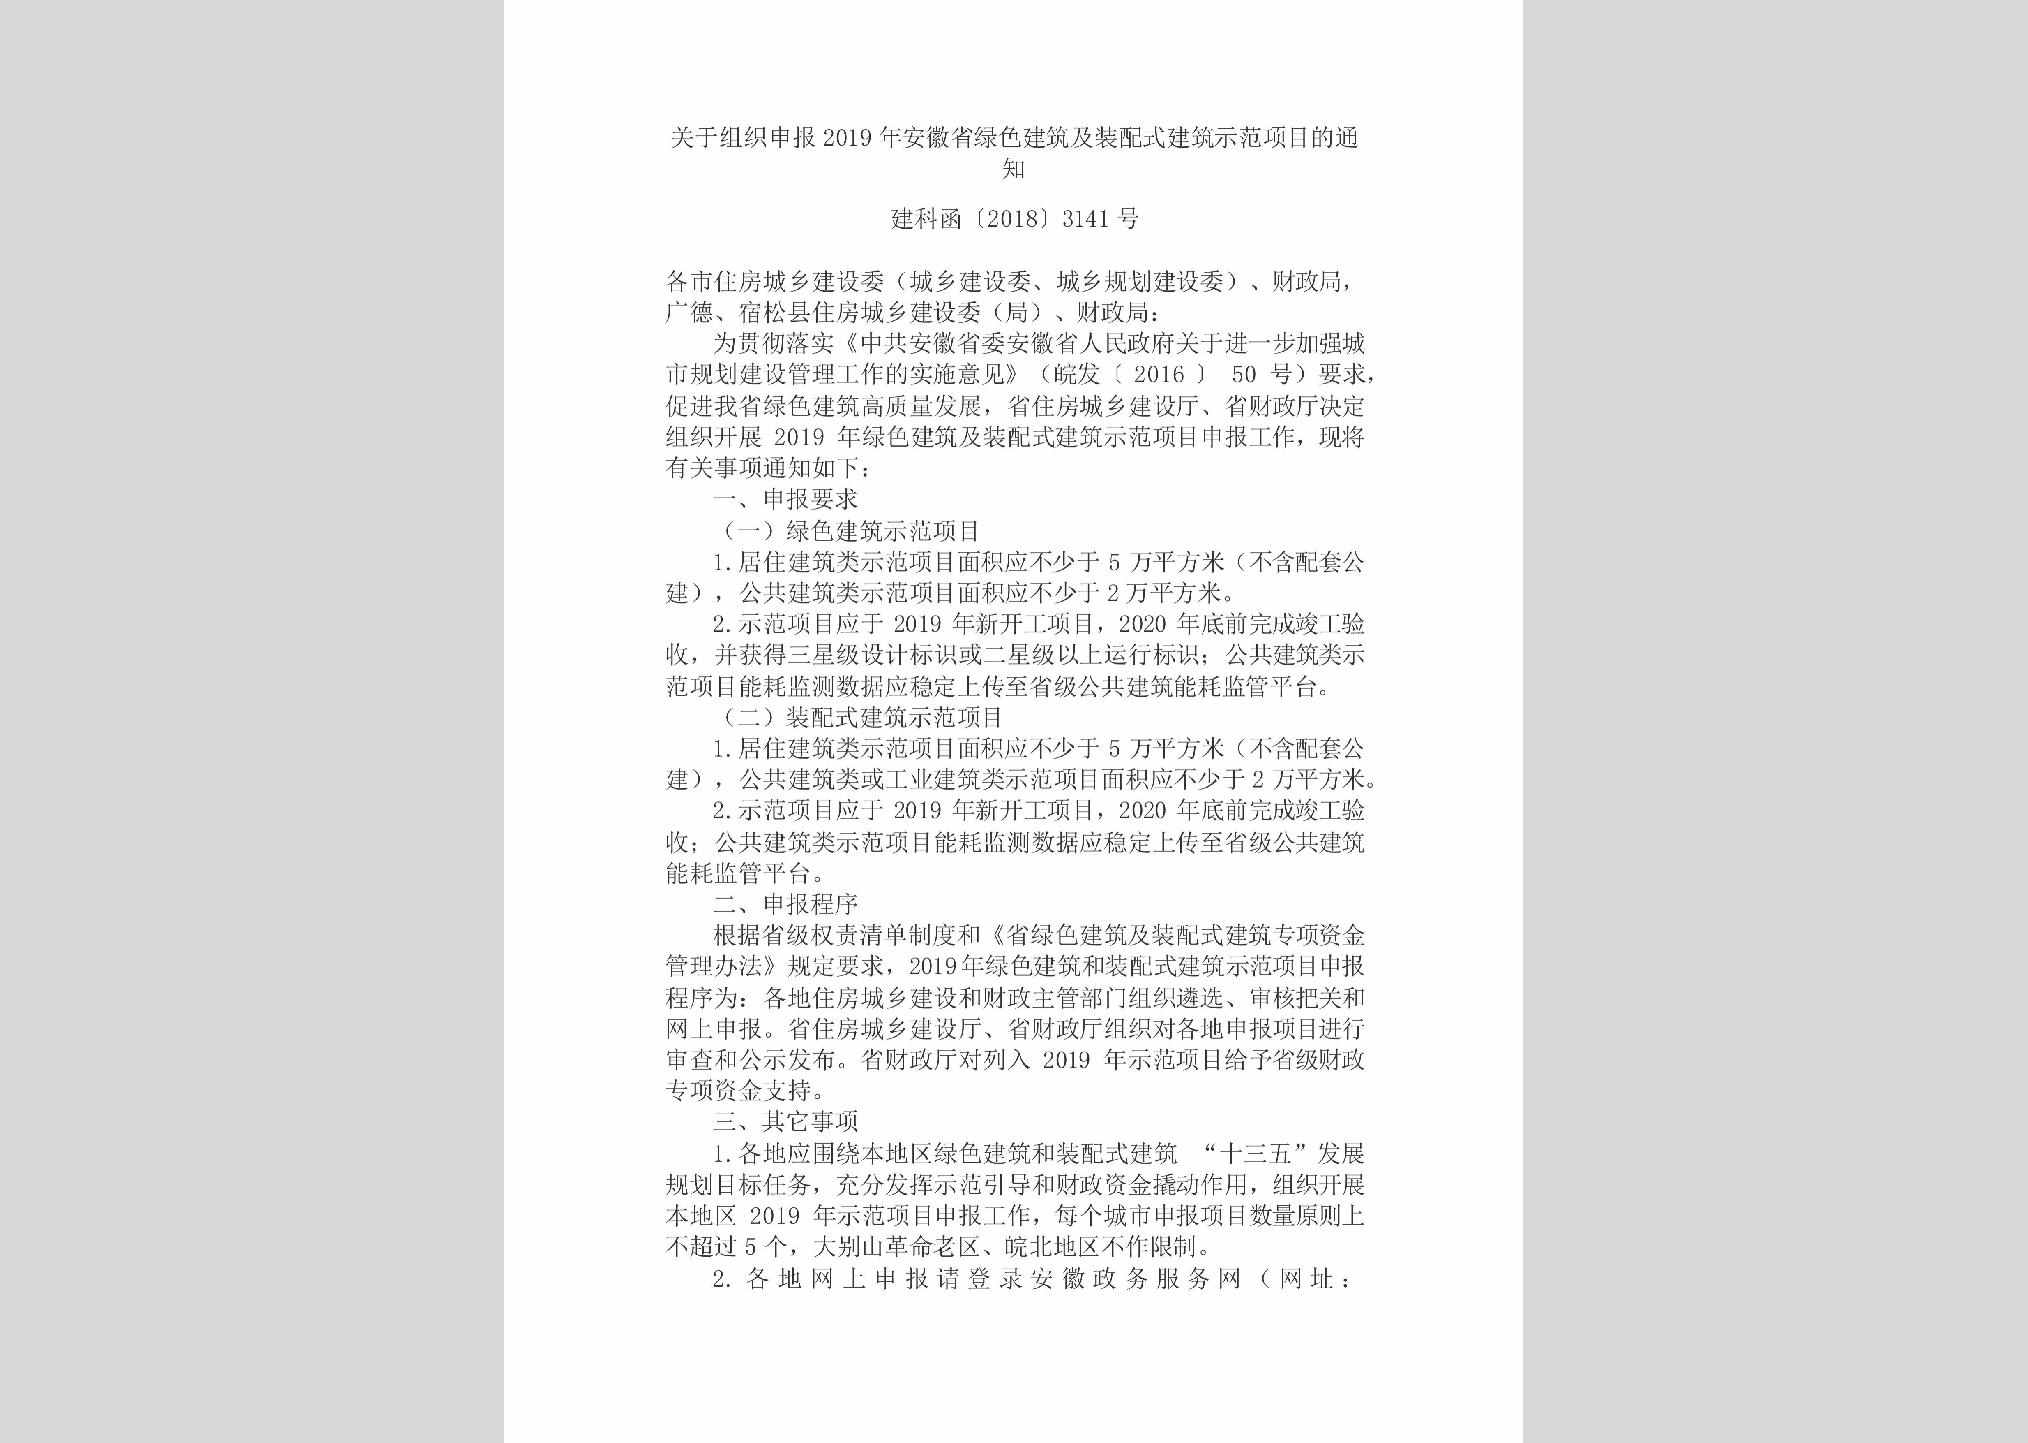 建科函[2018]3141号：关于组织申报2019年安徽省绿色建筑及装配式建筑示范项目的通知